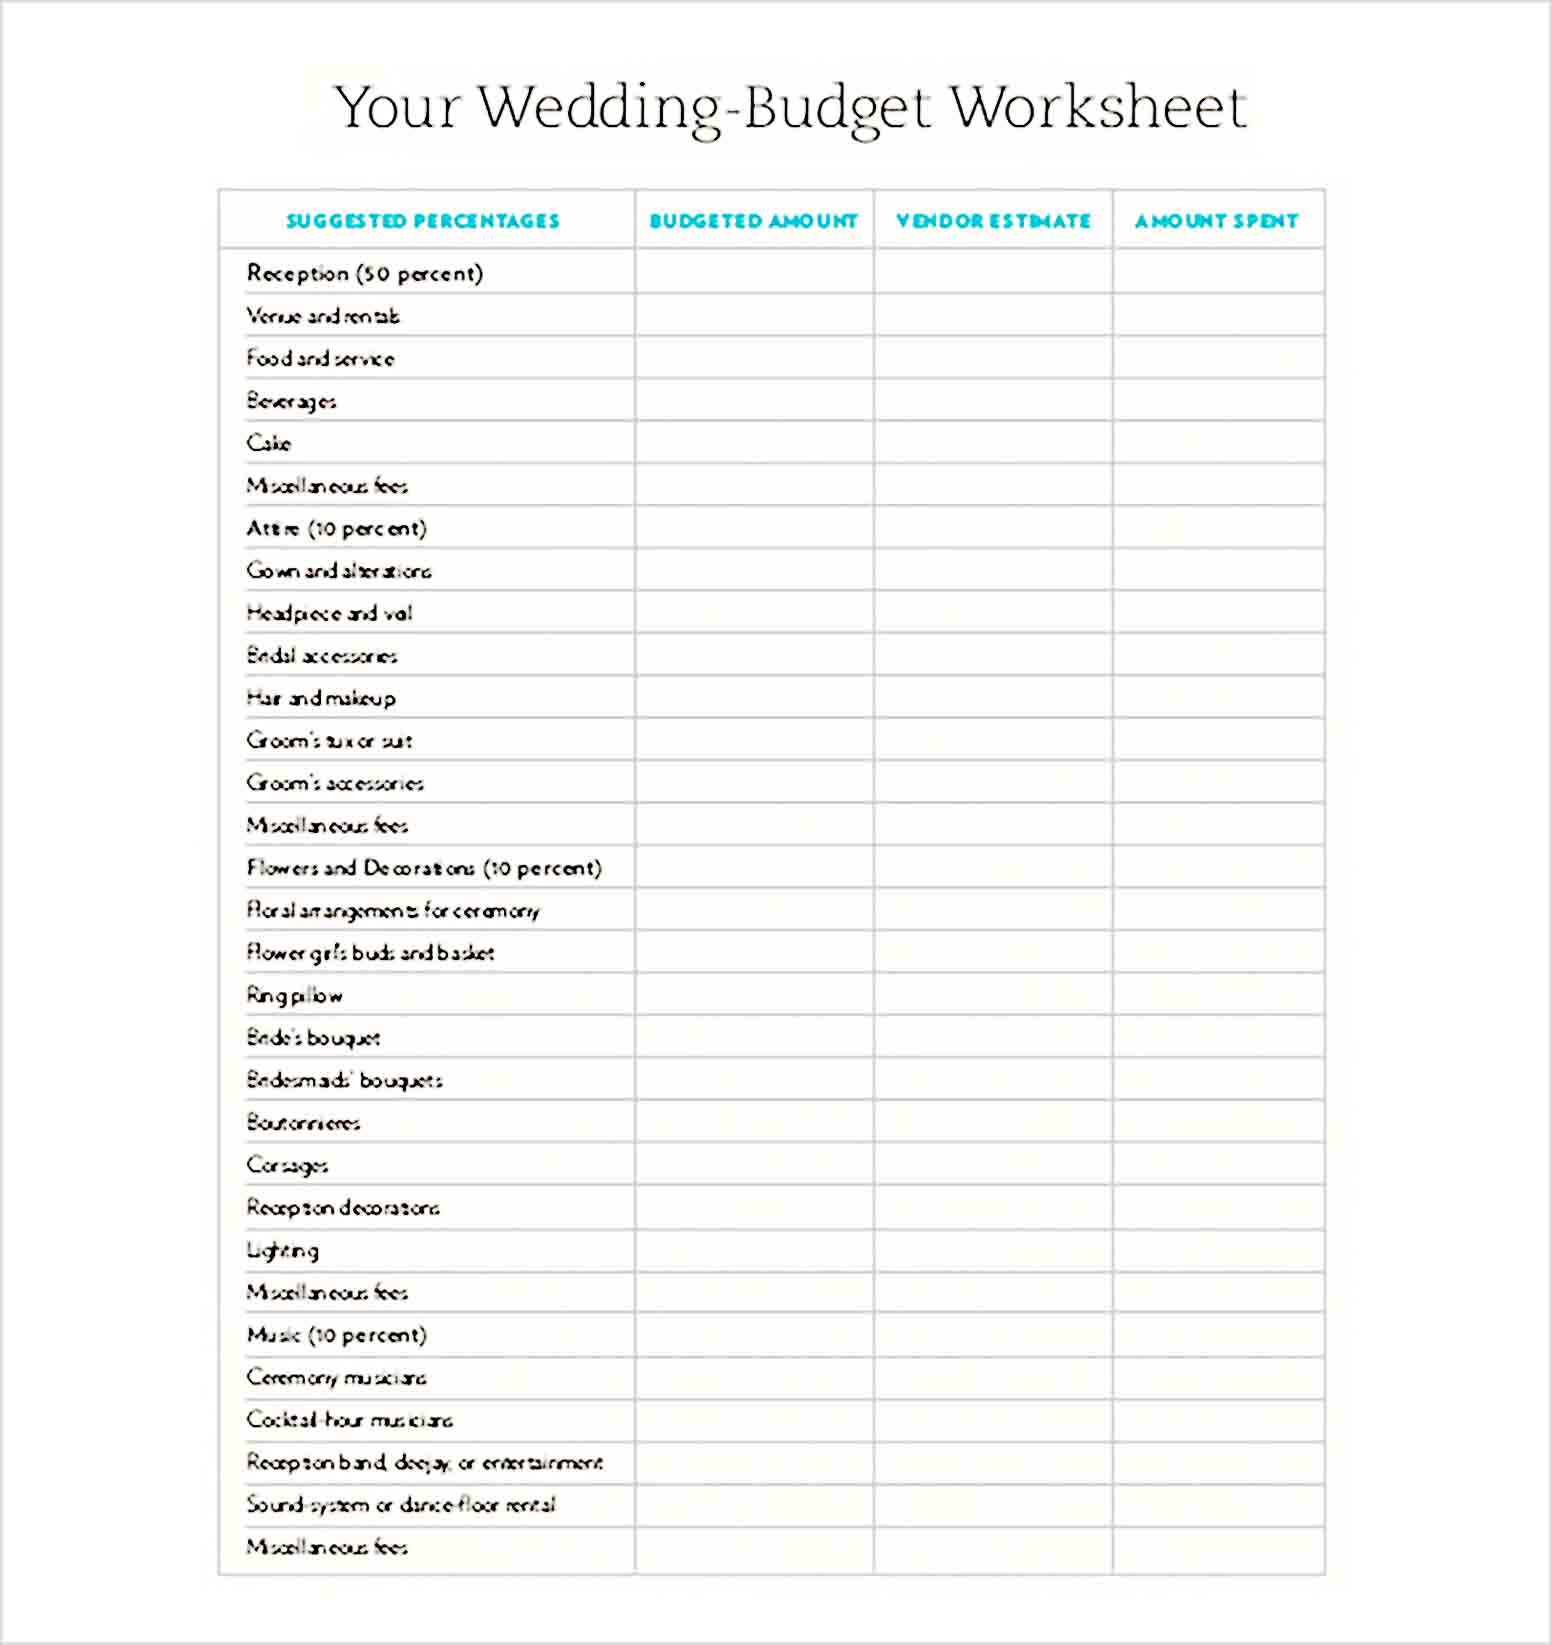 Wedding Budget XL Sheet Free Download